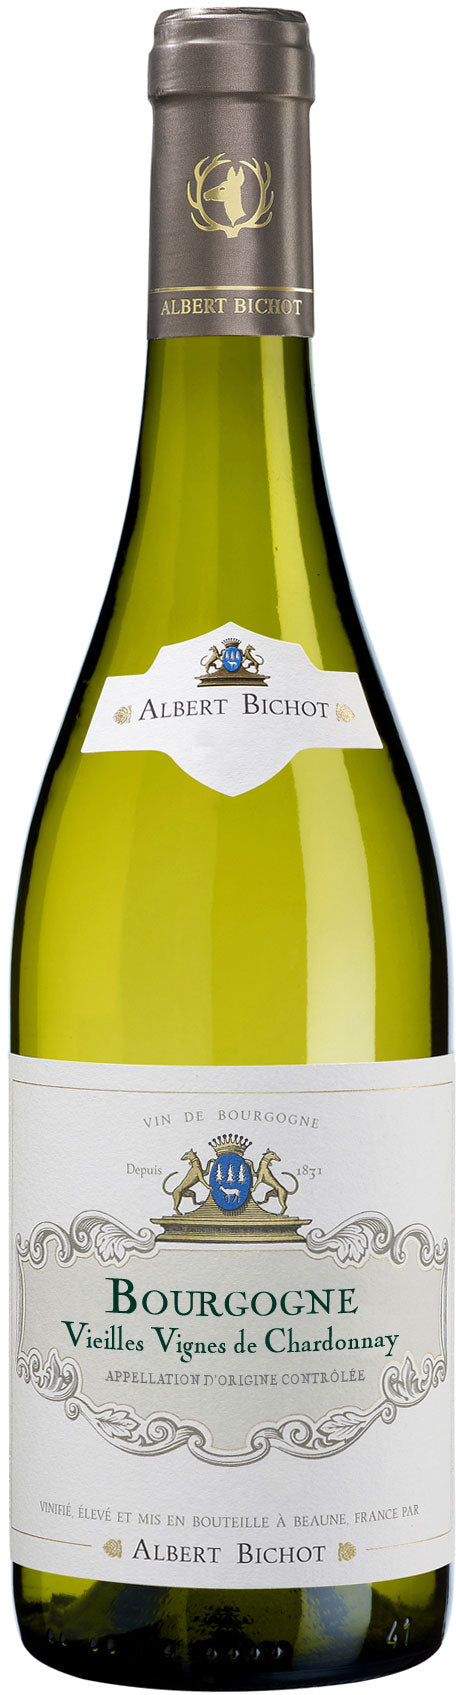 Albert Bichot Bourgogne Vieilles Vignes de Chardonnay 2021